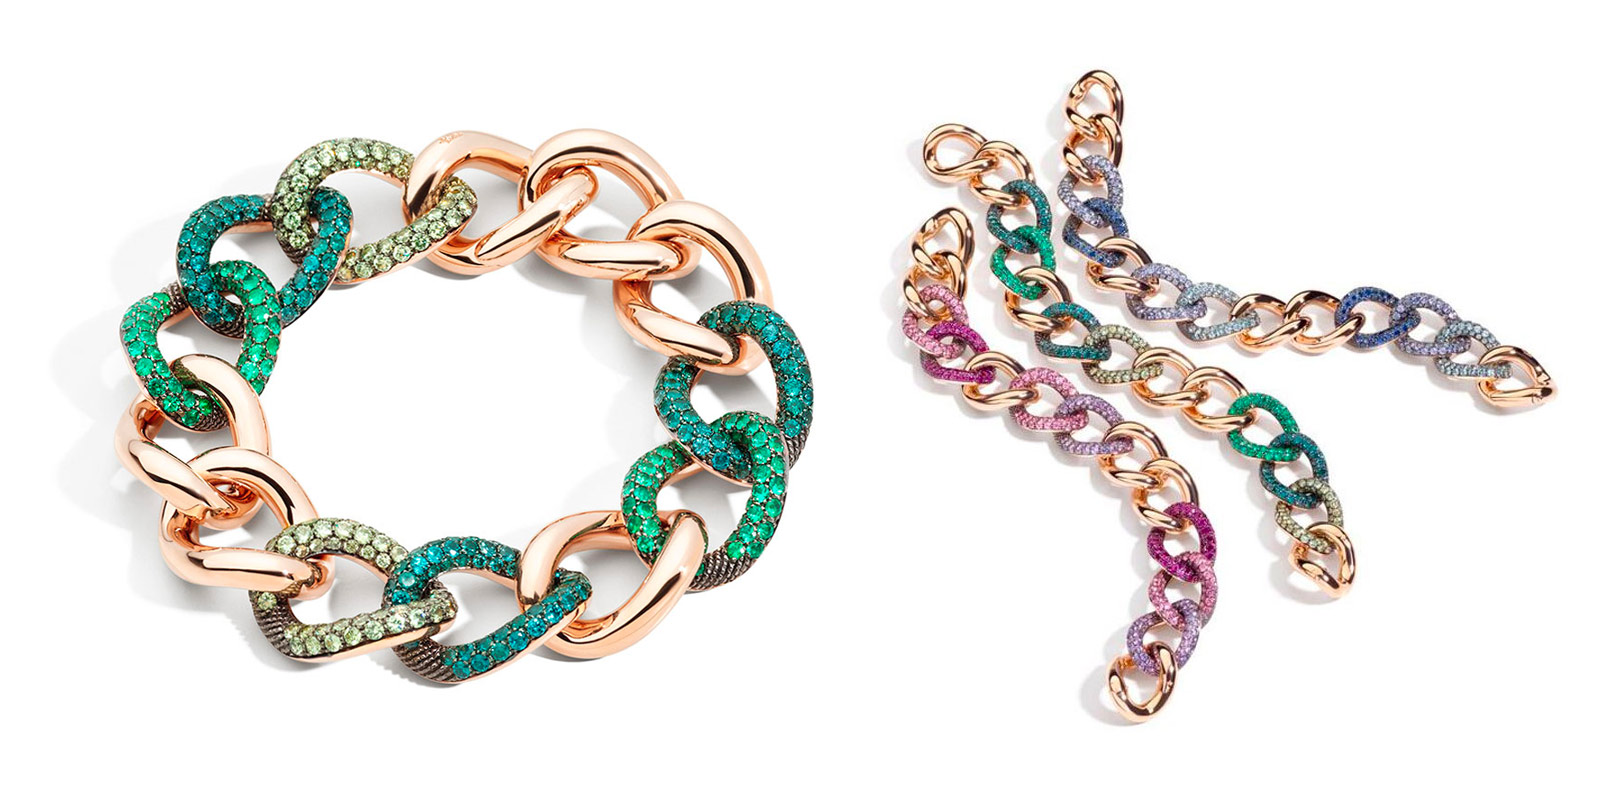 Emerald and sapphire Tango chain bracelets by Pomellato